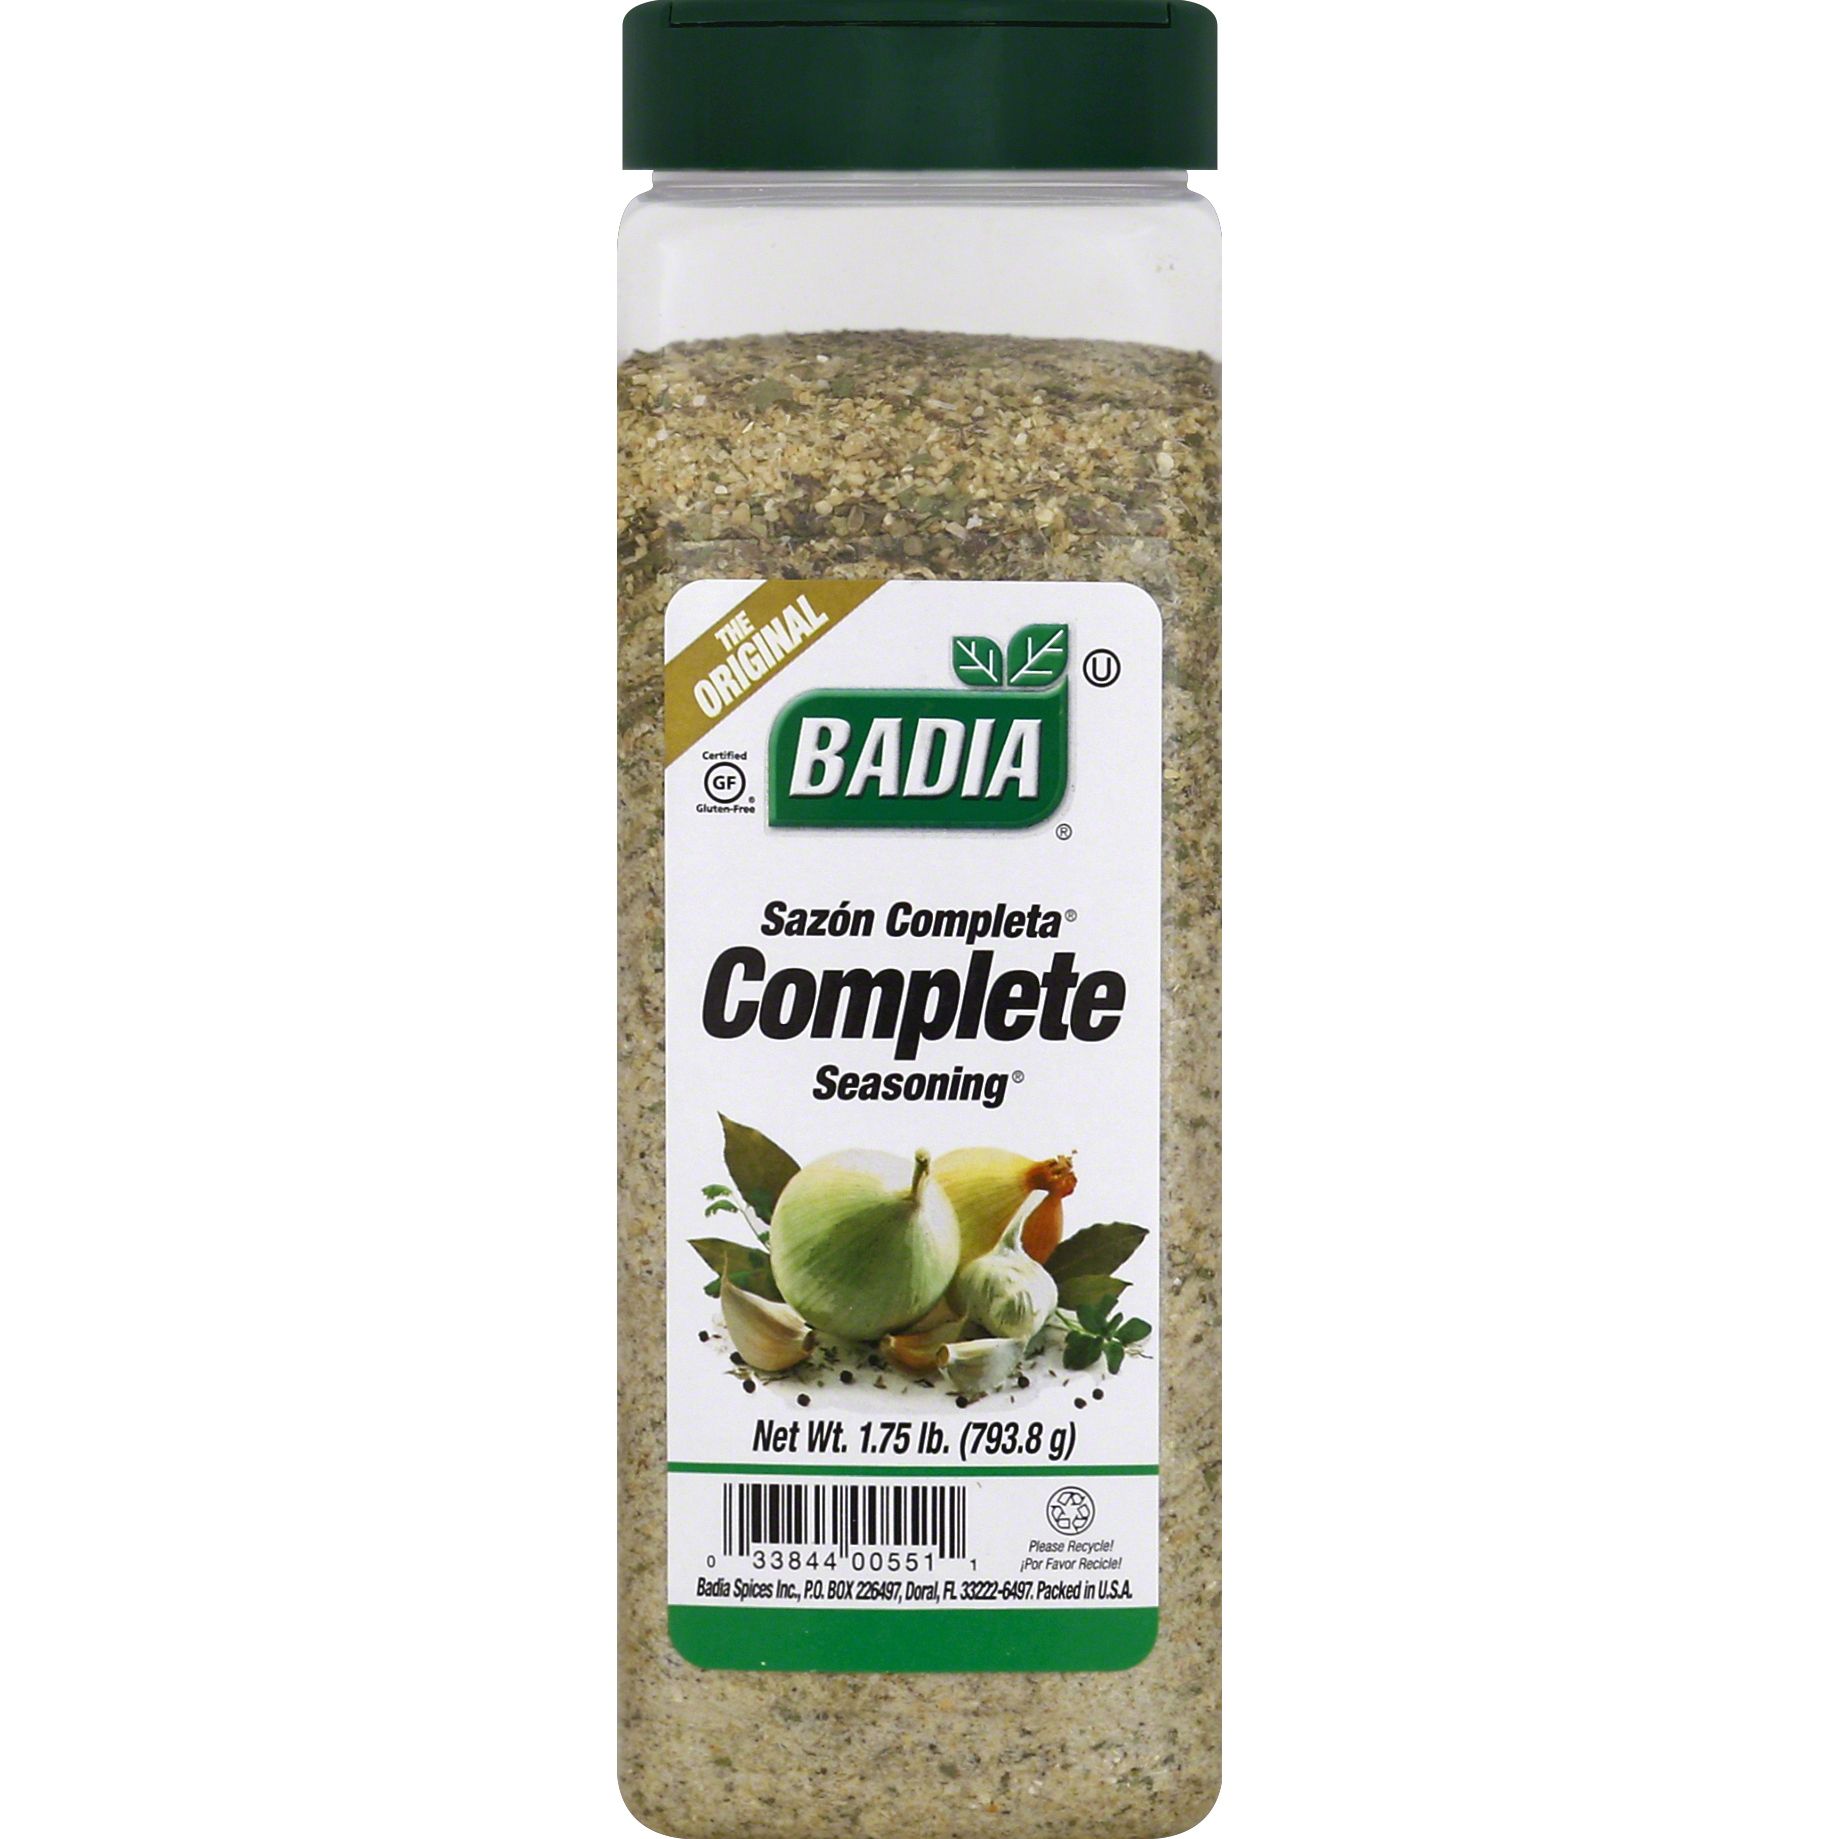 Badia Sazon Complete Seasoning, 1.75 lbs.